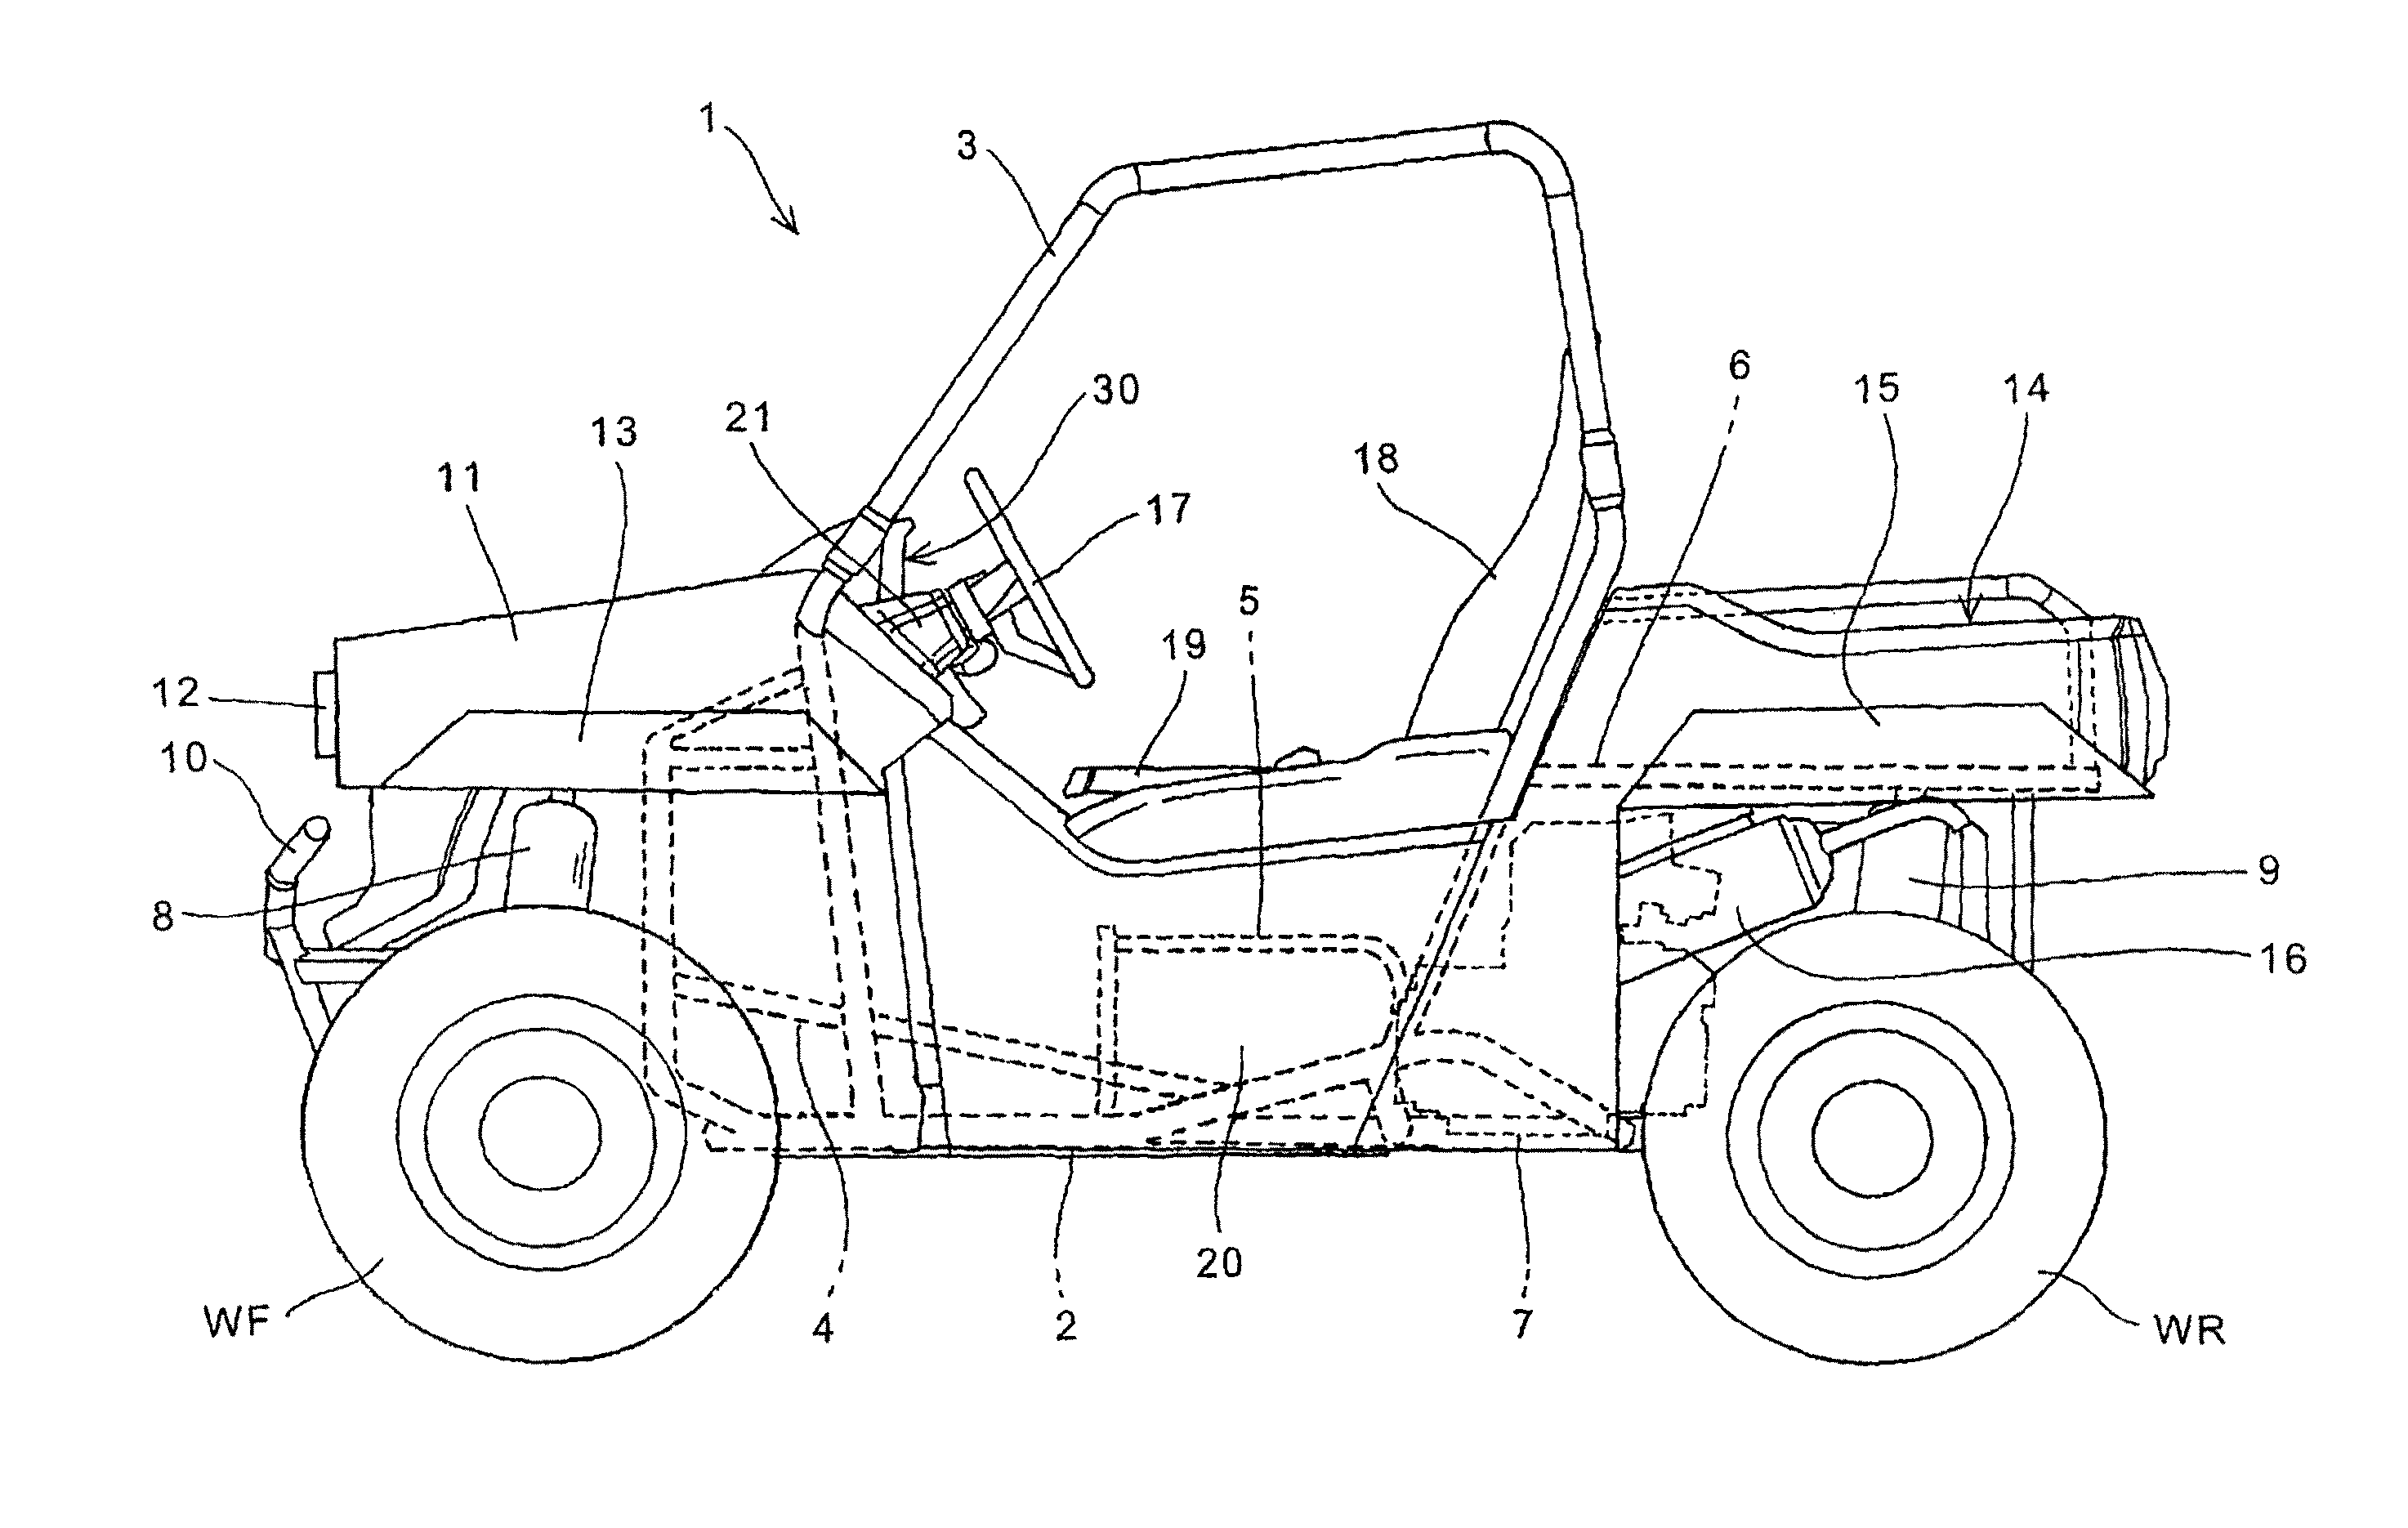 ECU arrangement structure for a vehicle